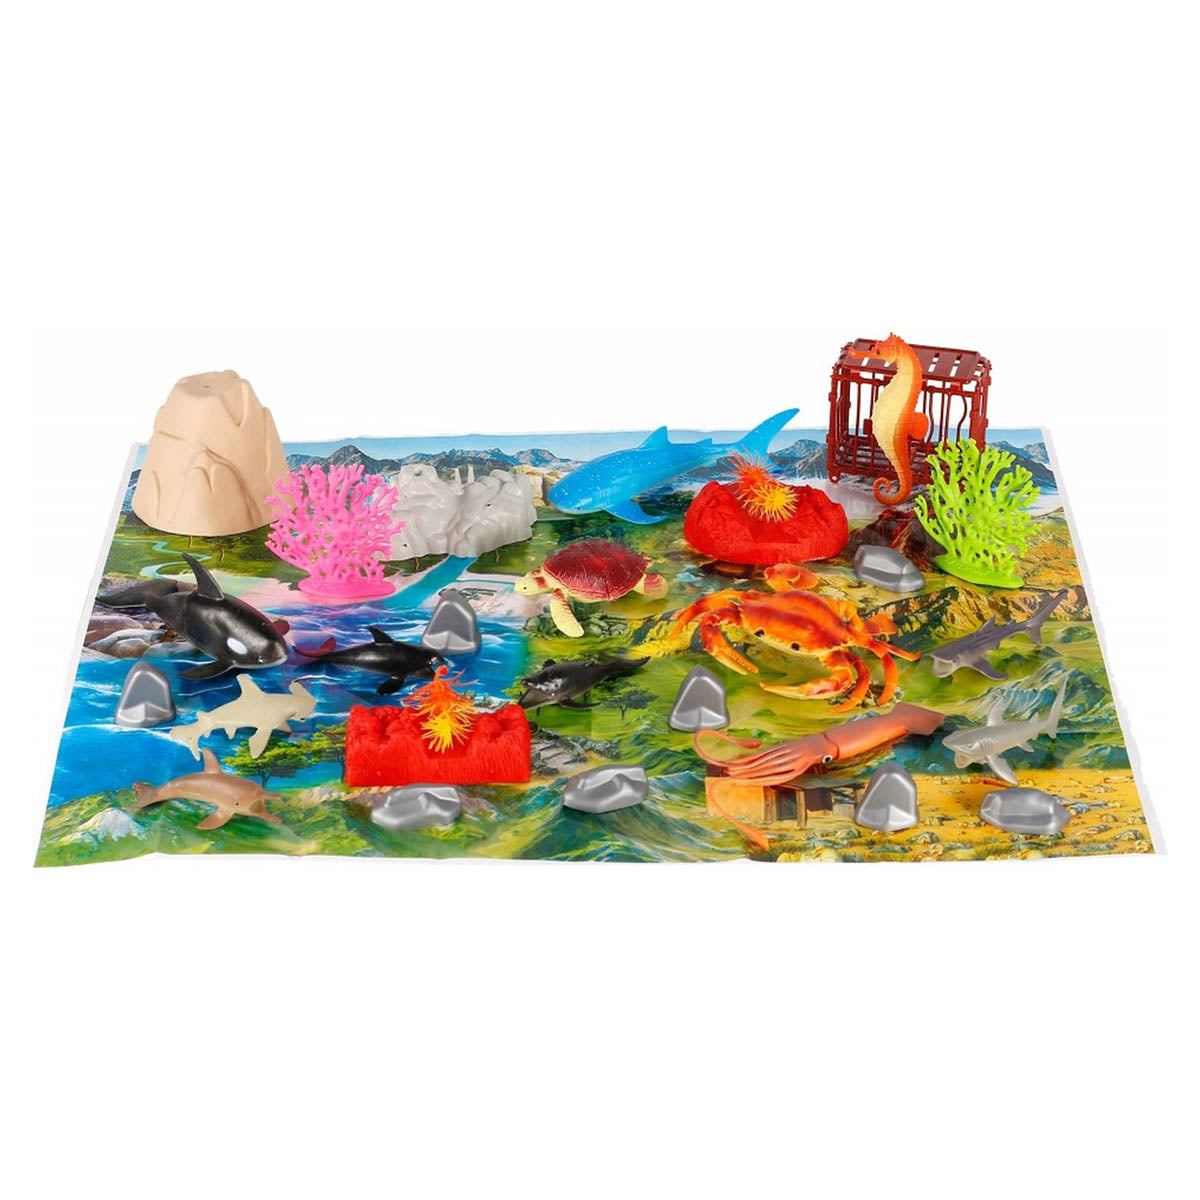 Ariko Ensemble de jeu Sea Creatures - Idéal pour les enfants - 30 pièces - Comprend un tapis de jeu